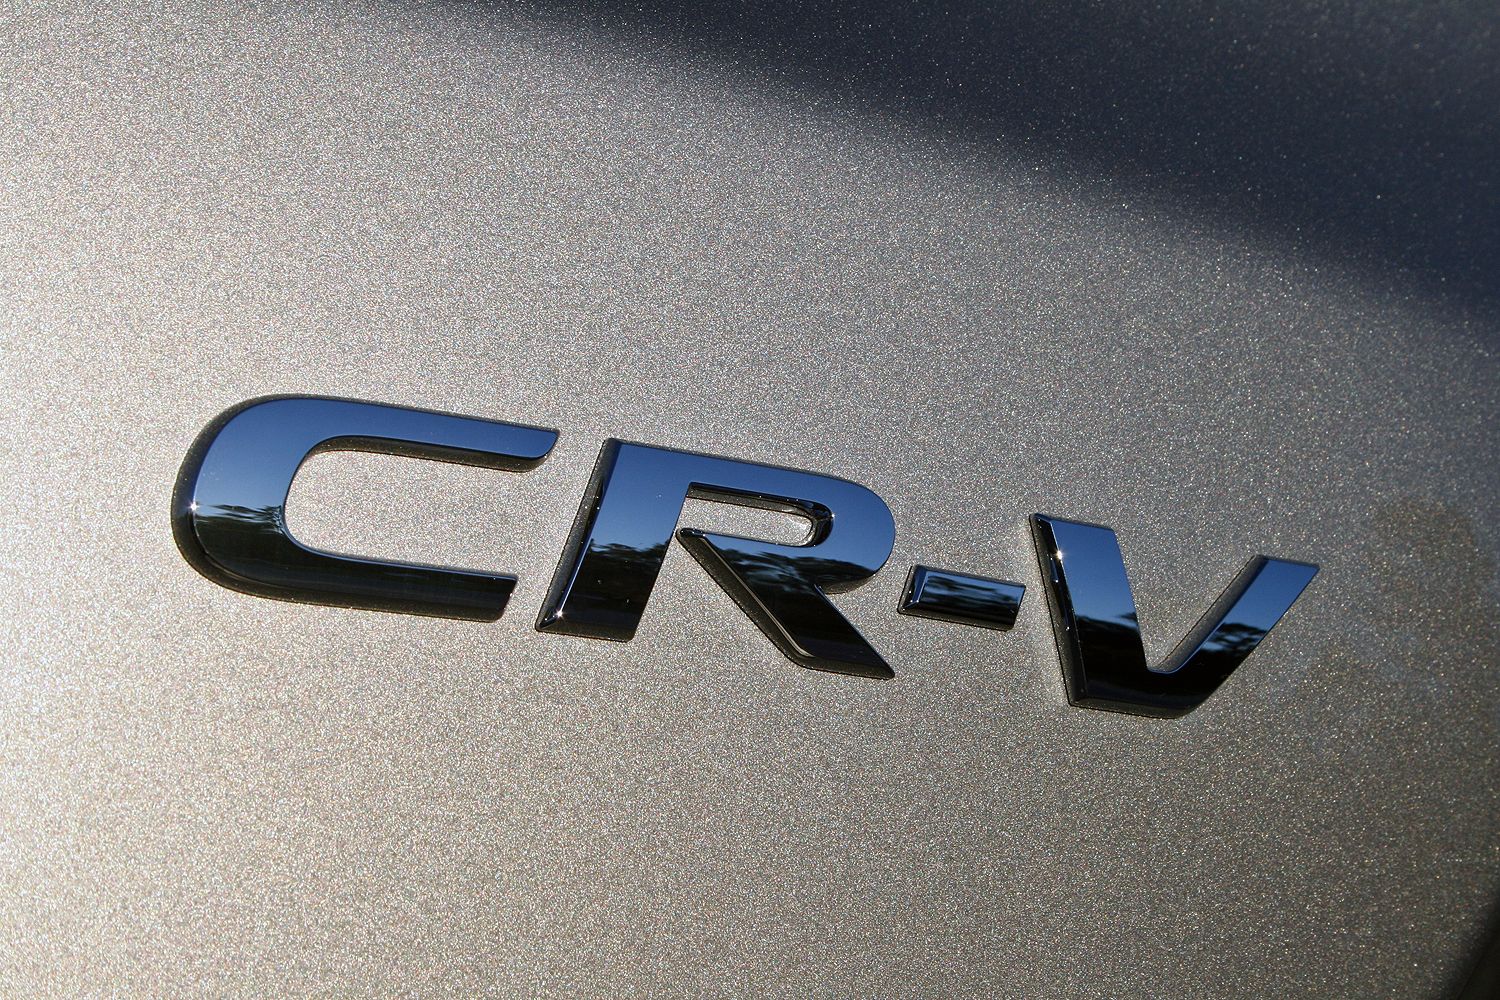 2017 Honda CR-V – Driven